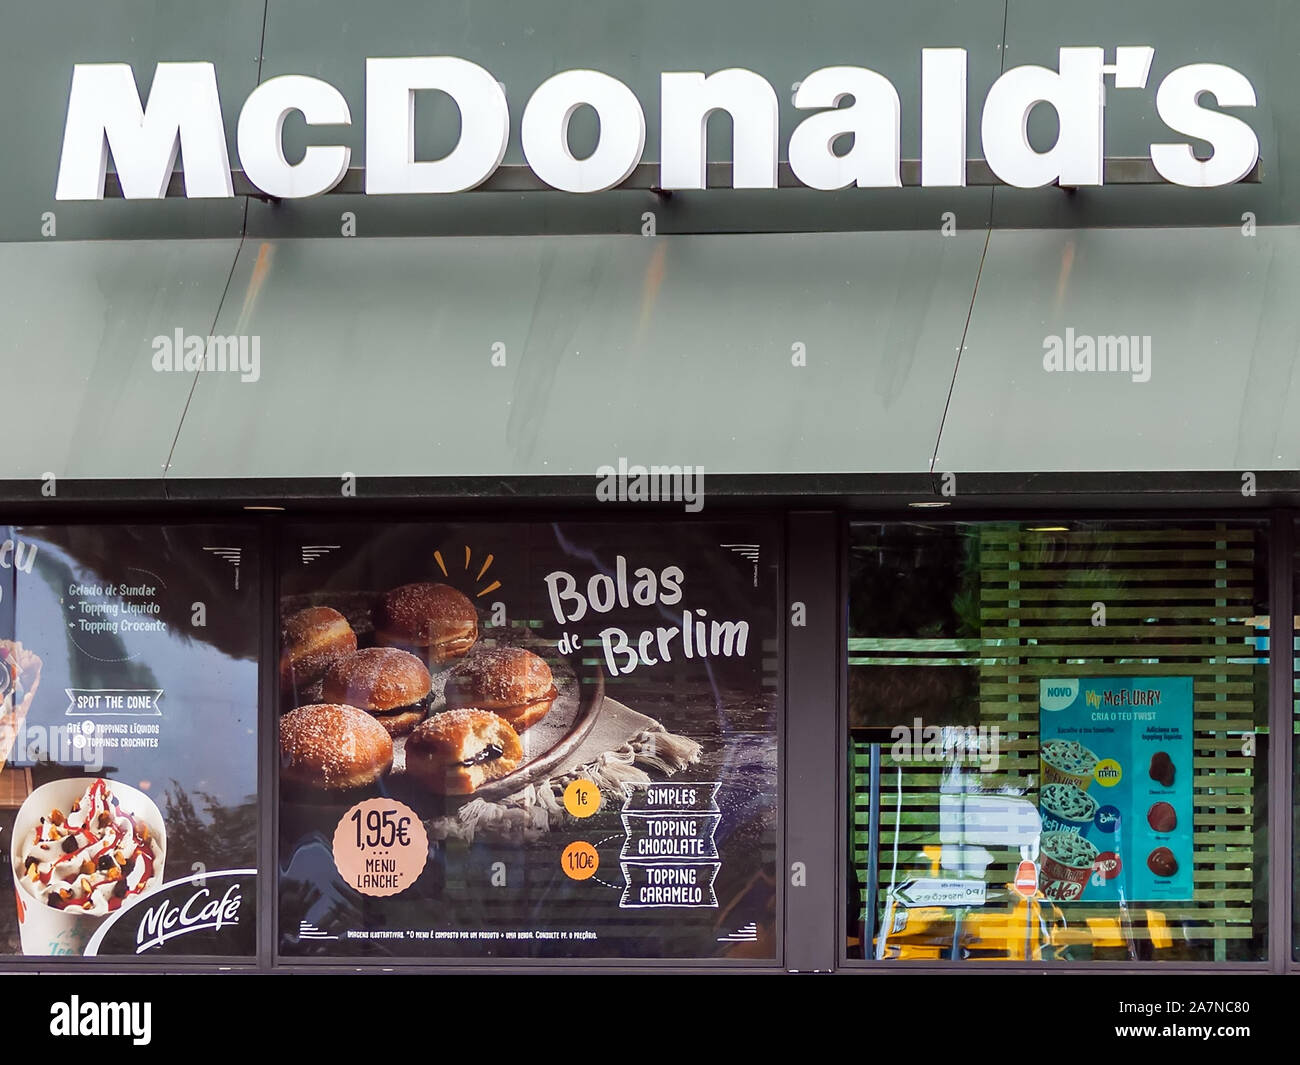 Coina, Portugal. Storefront der McDonalds Restaurant und McCafe Werbung ein süßes Gebäck namens Bolas de Berlim, eine regionale portugiesische Spezialität. Stockfoto